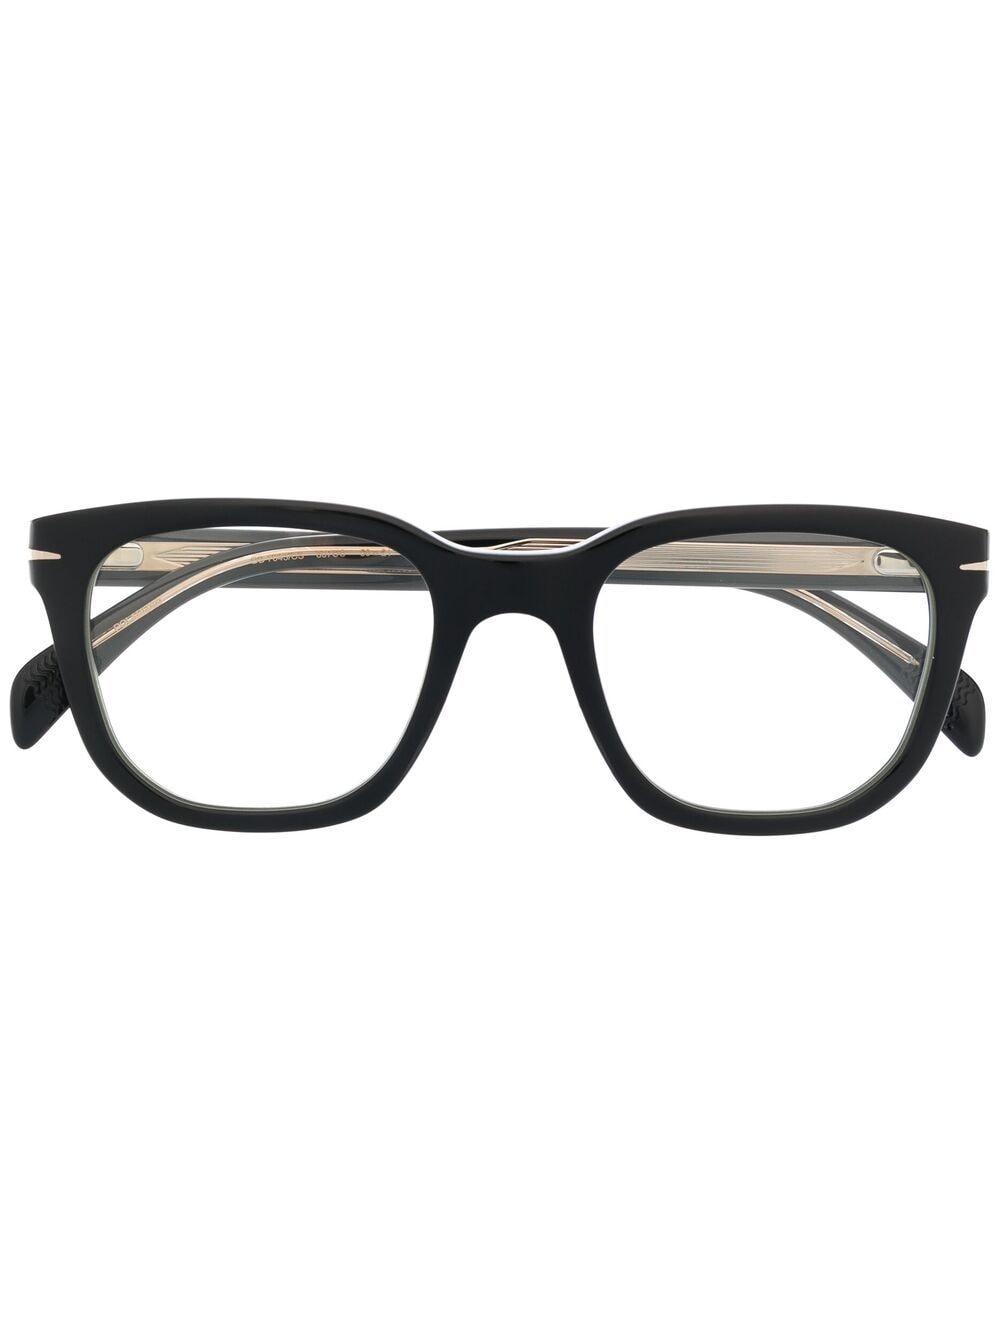 clip-on lens glasses